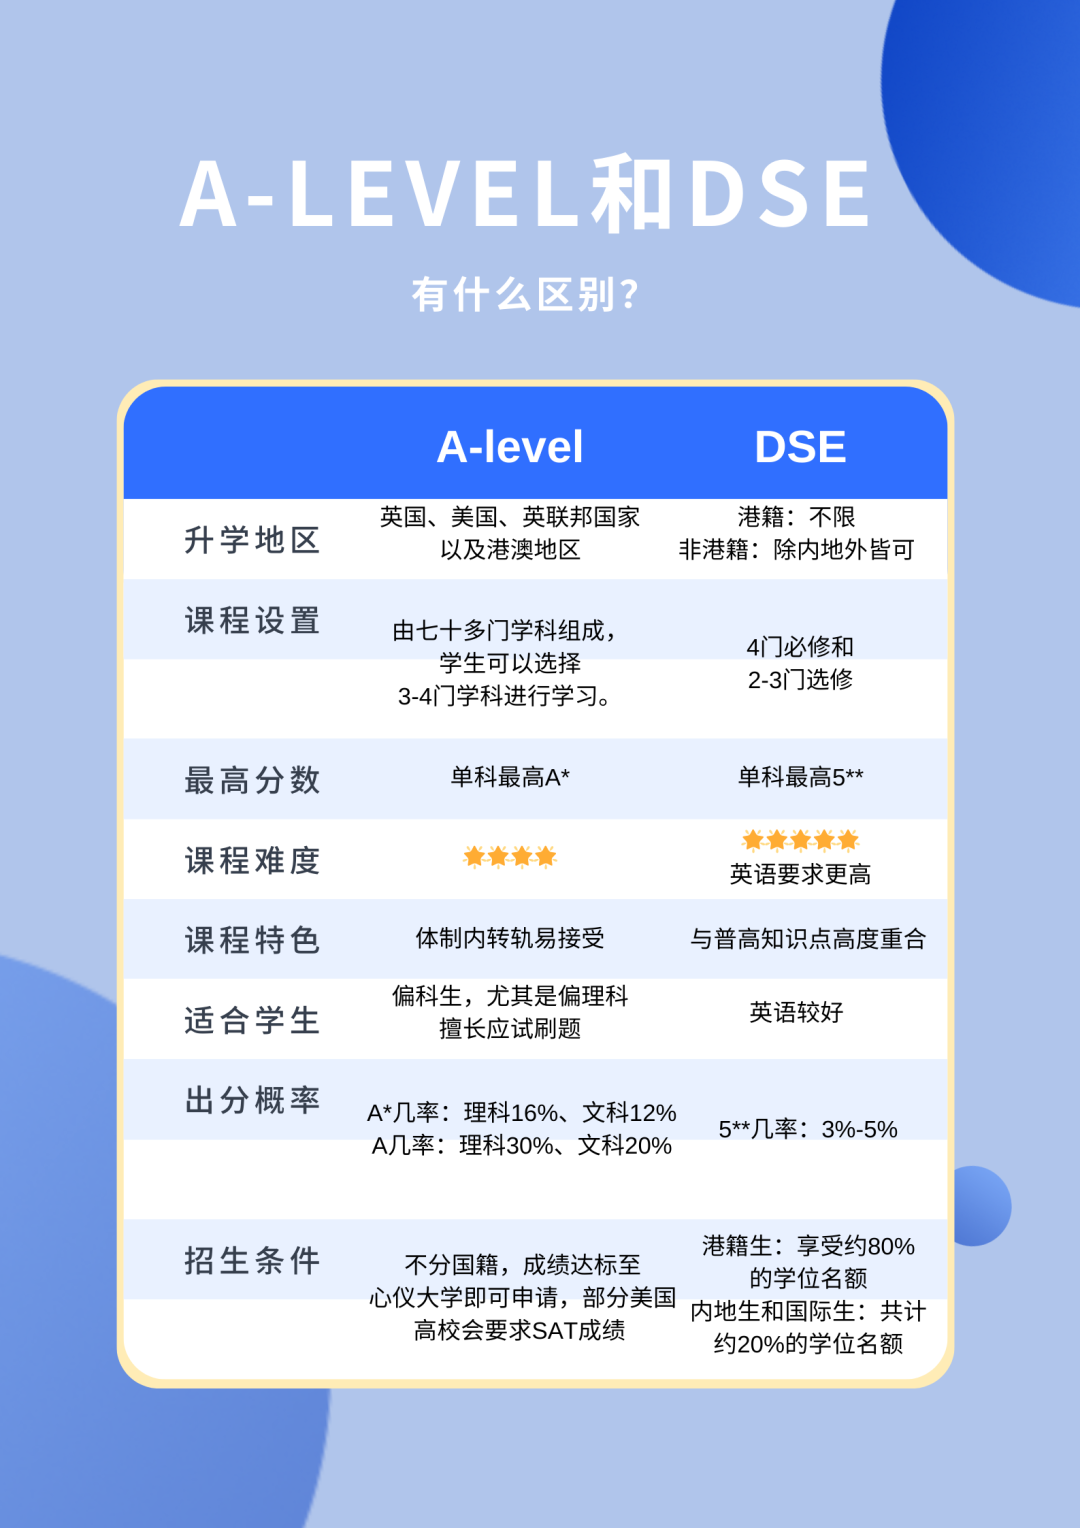 目标香港大学，选DSE还是A-Level课程？